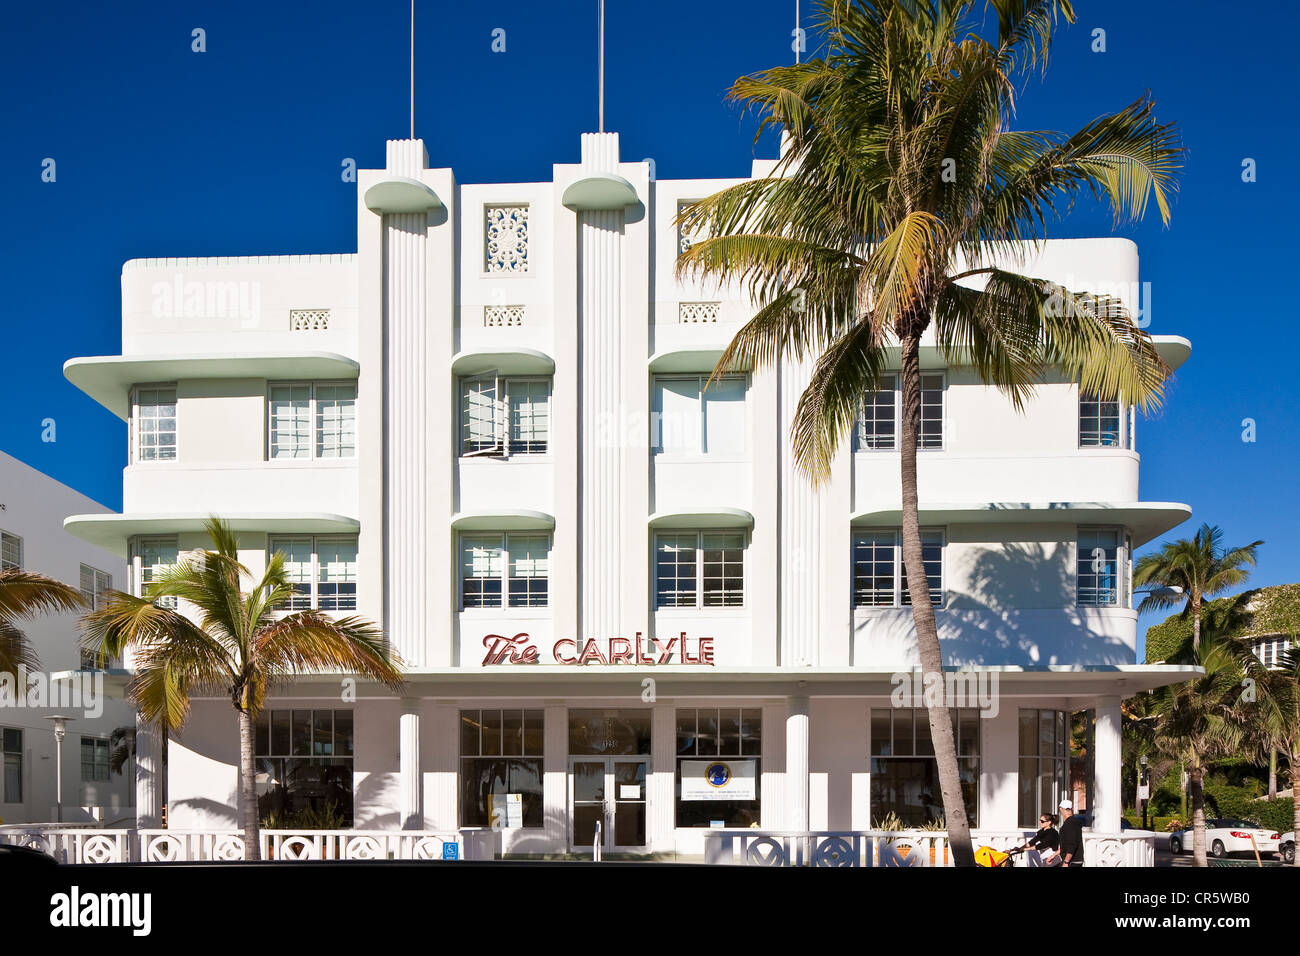 United States, Florida, Miami Beach, South Beach, le quartier Art déco, Ocean Drive, le Carlyle hotel construit en 1939 par les architectes Banque D'Images